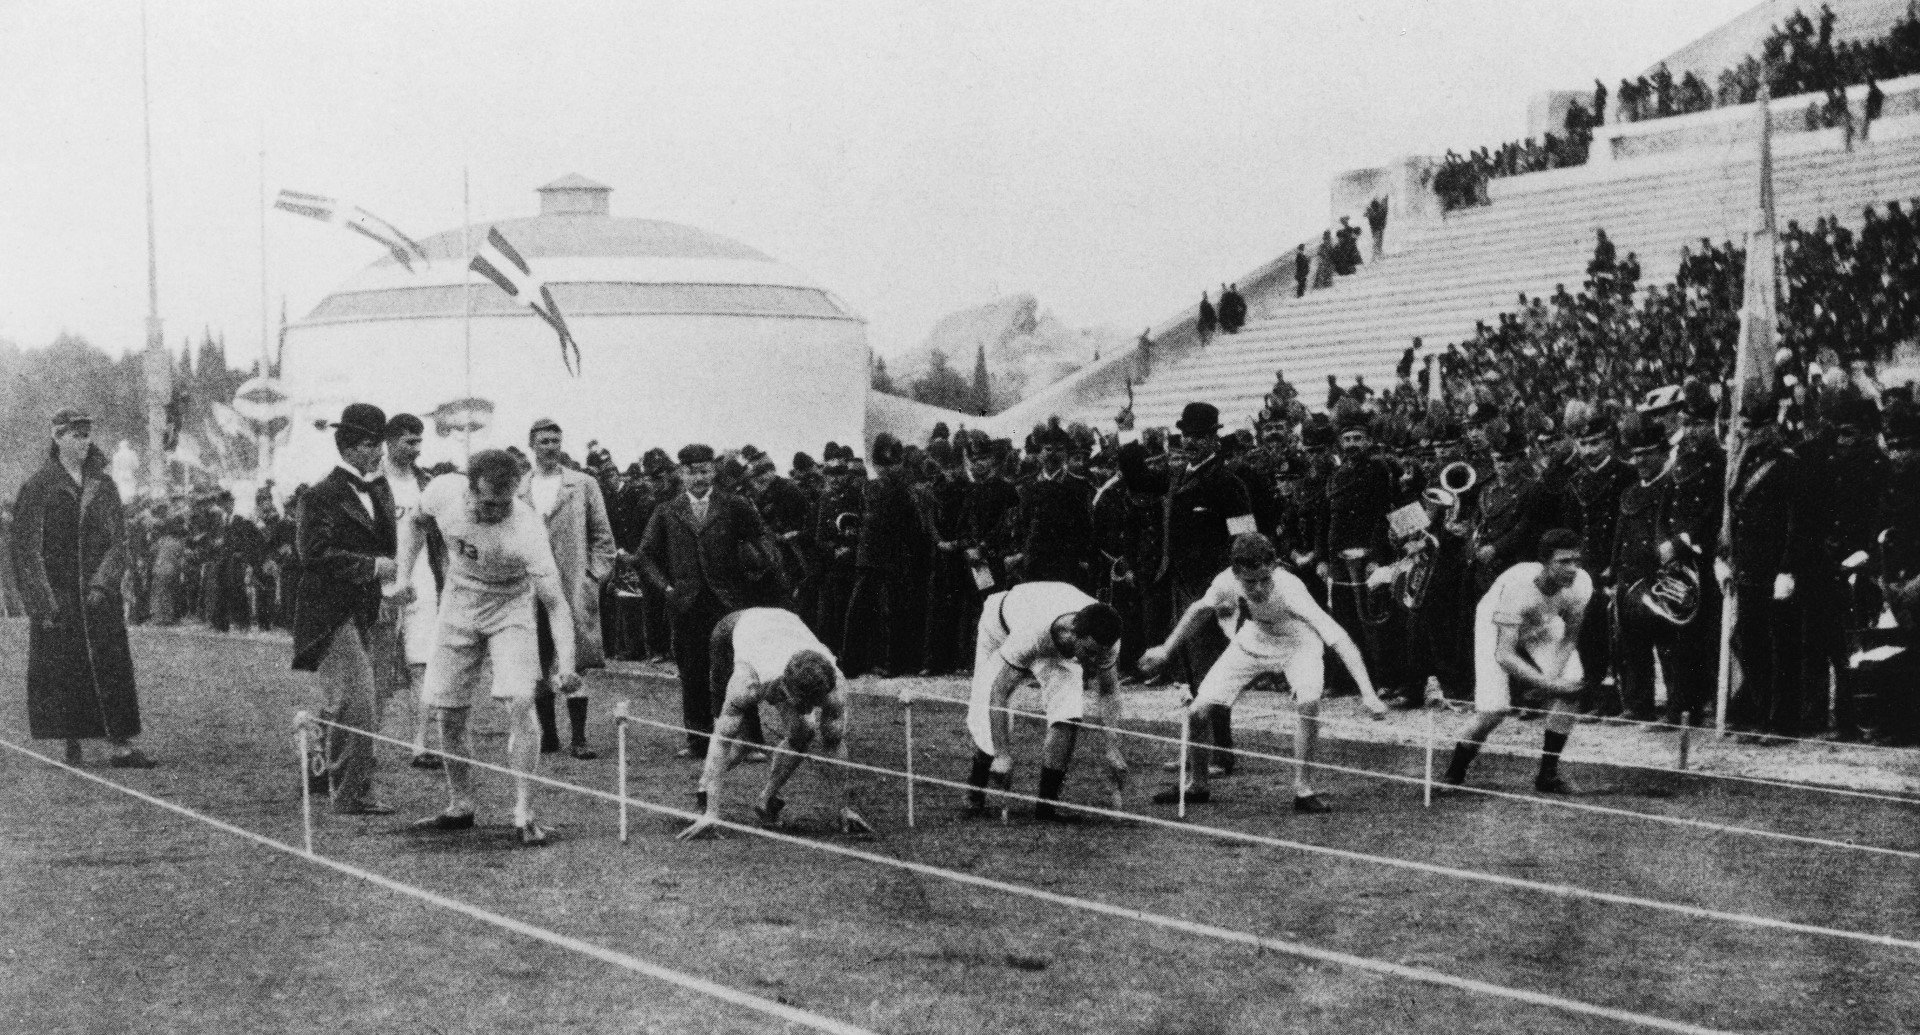 Първият спринт. Това е - ето така е изглеждало първото състезание на 100 метра по време на   Олимпиадата в Атина през 1896 г. Участват 15 спринтьори, печели Томас Бърк   от САЩ, който бяга стоте метра за точно 12 секунди. Днес рекордът на Болт е   9.58 секунди.